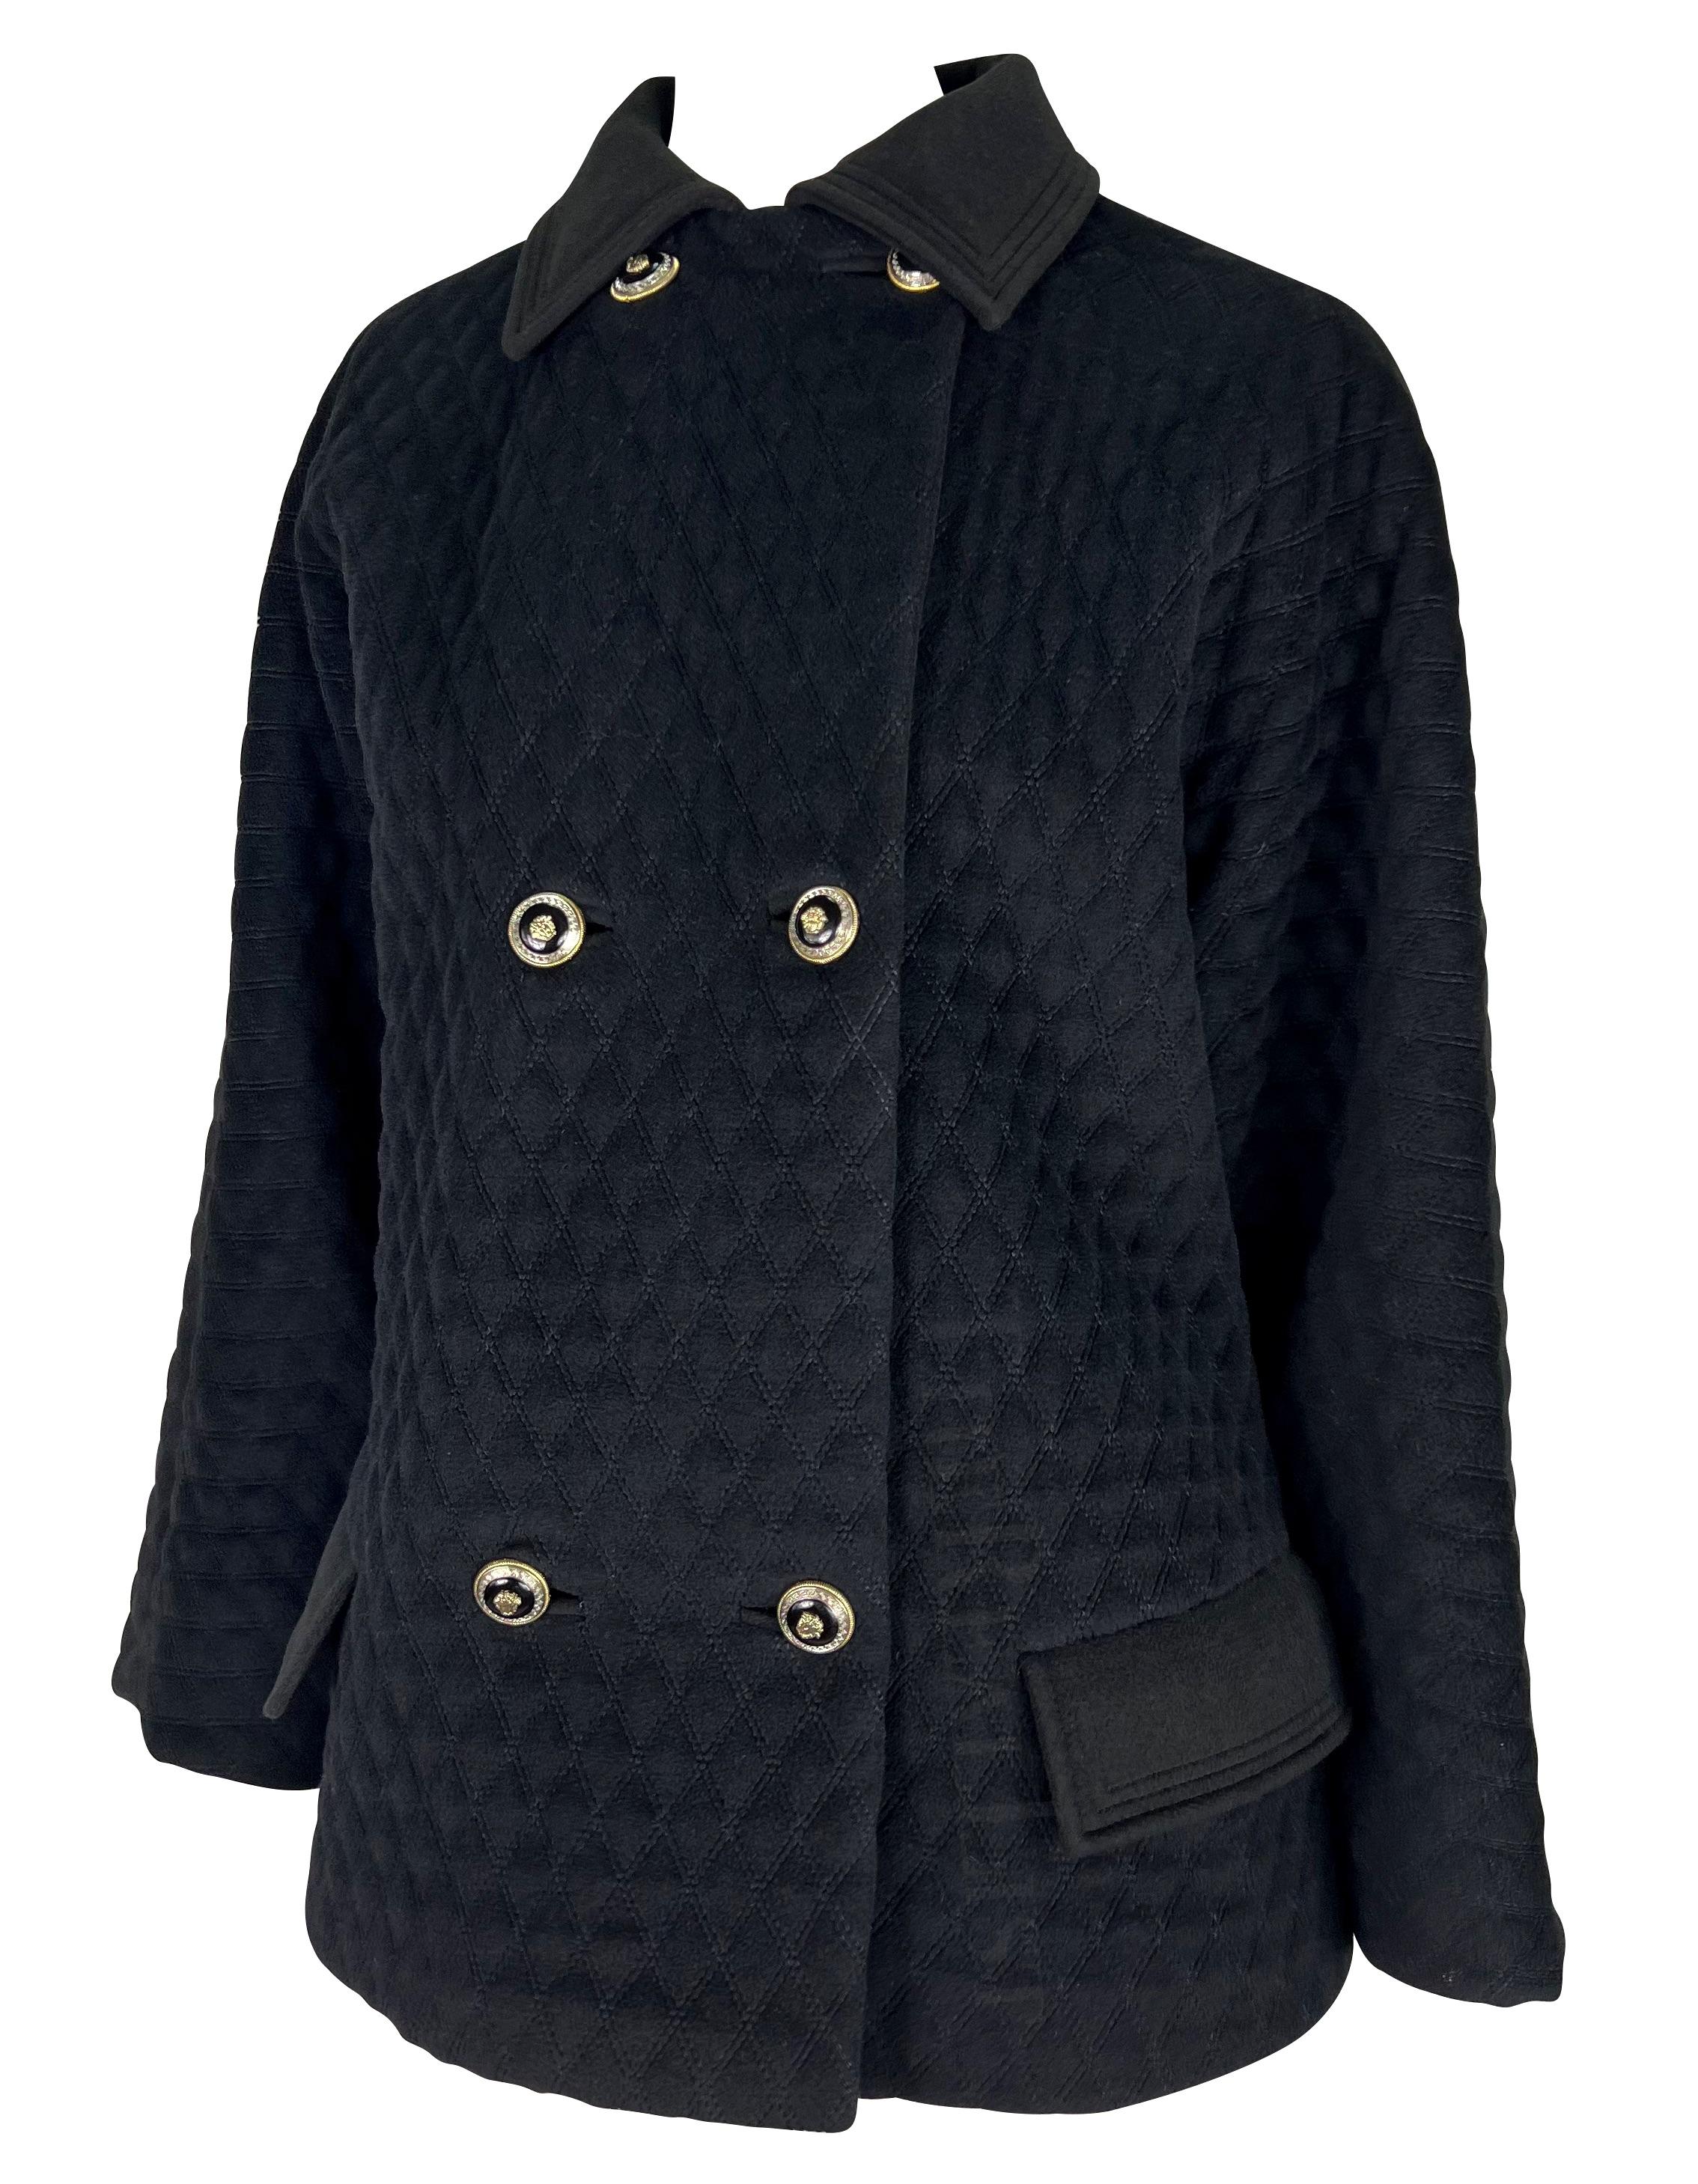 Présentation d'un manteau de voiture matelassé noir Gianni Versace, conçu par Gianni Versace. Issu des années 1990, ce manteau surdimensionné offre une esthétique intemporelle. La fermeture à double boutonnage, accentuée par des boutons en relief